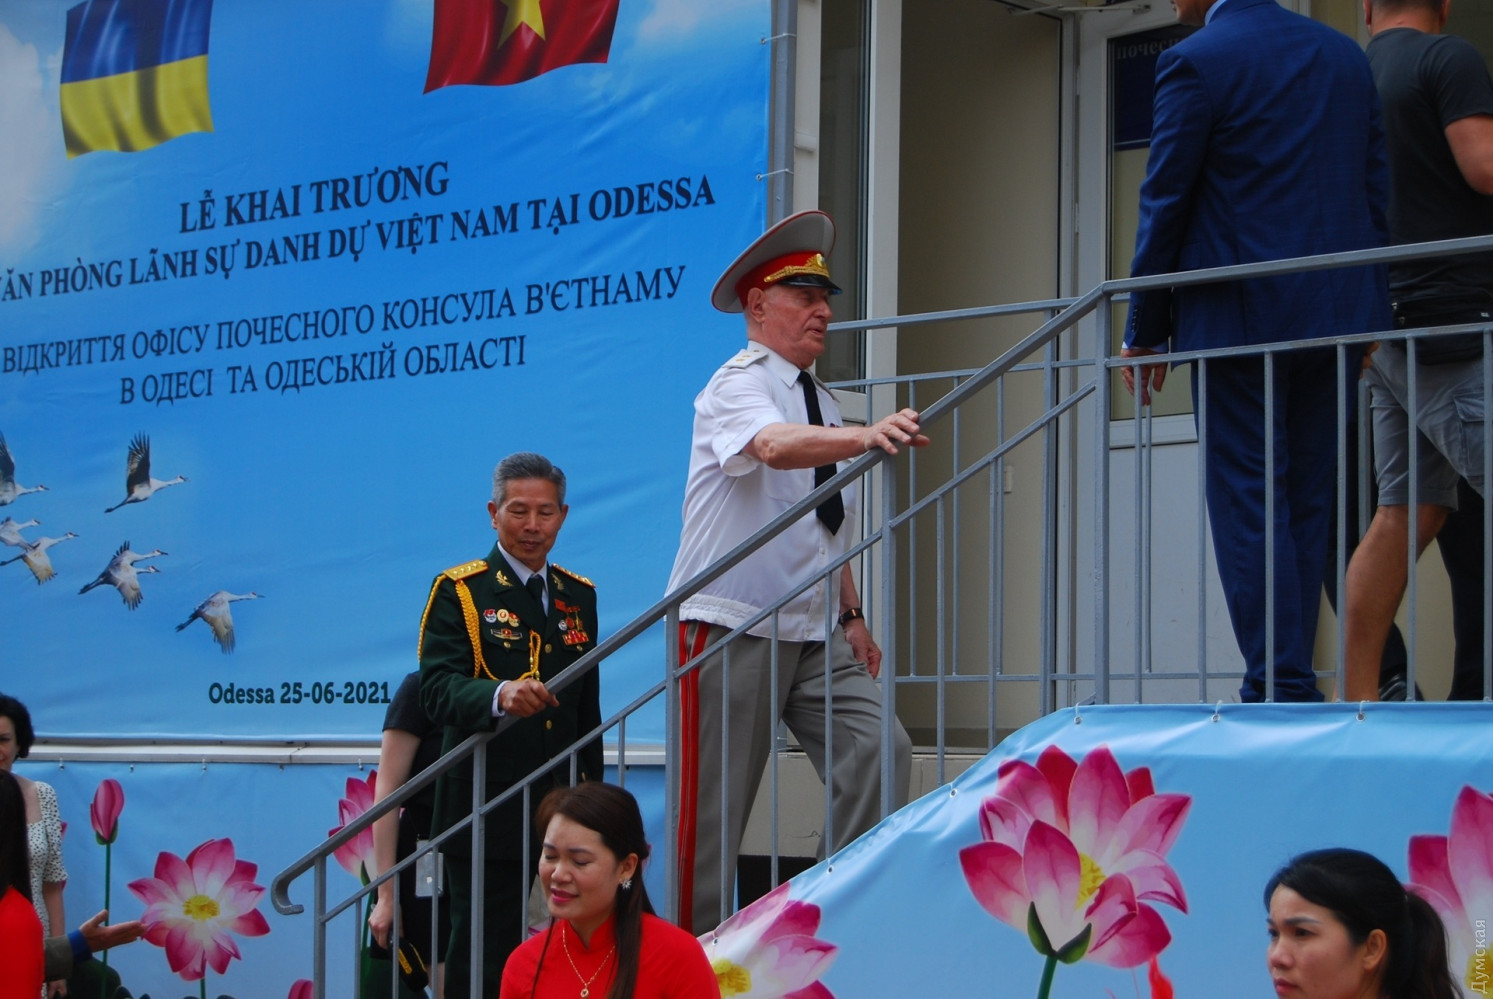 Danh sách ủng hộ Quỹ Văn phòng Lãnh sự danh dự Việt Nam tại Odessa